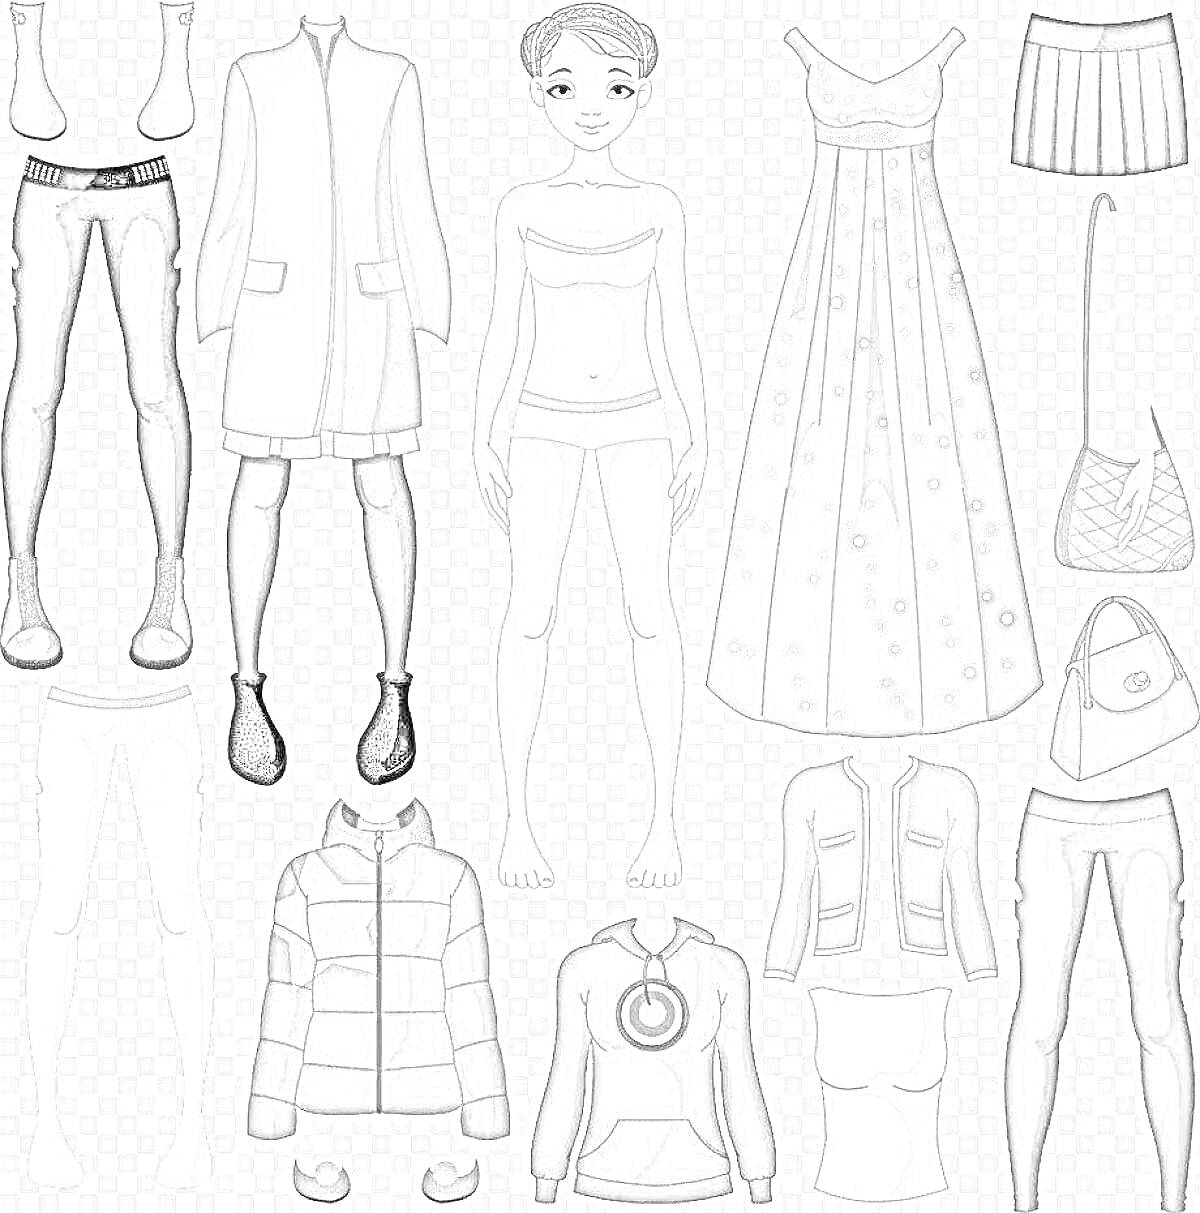 Раскраска Девочка с набором одежды: куртка, пальто, юбка, джинсы, леггинсы, платье, свитер, шапка, сумка